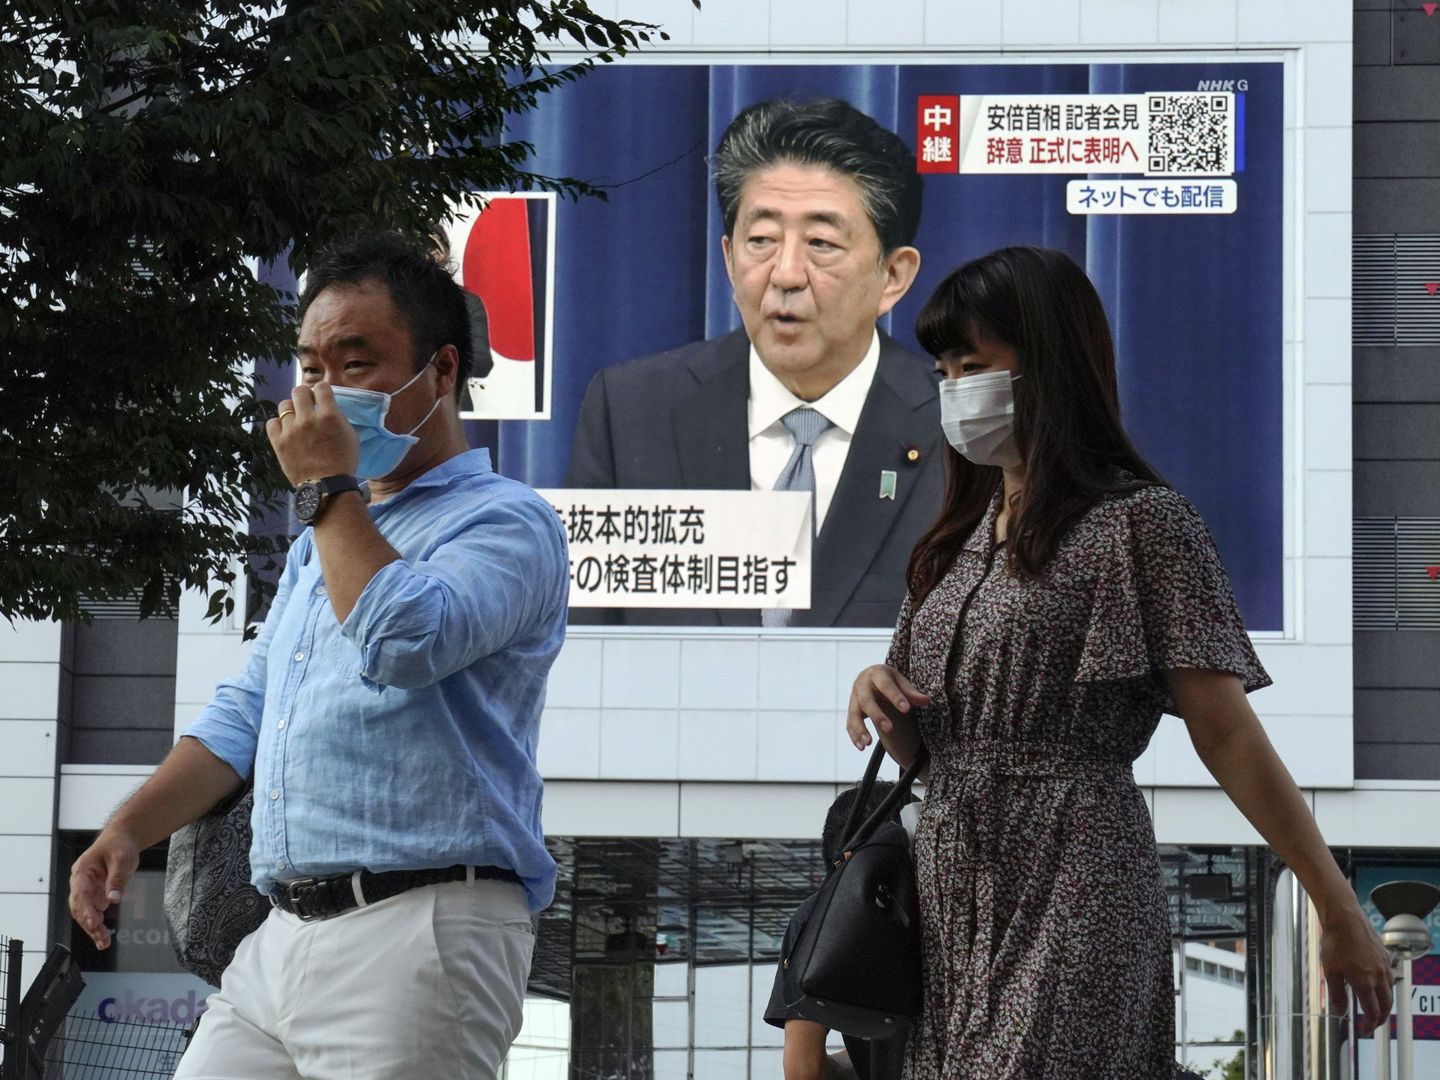 El primer ministro japonés Shinzo Abe anunciando su dimisión, en una pantalla en Tokio. (Reuters)